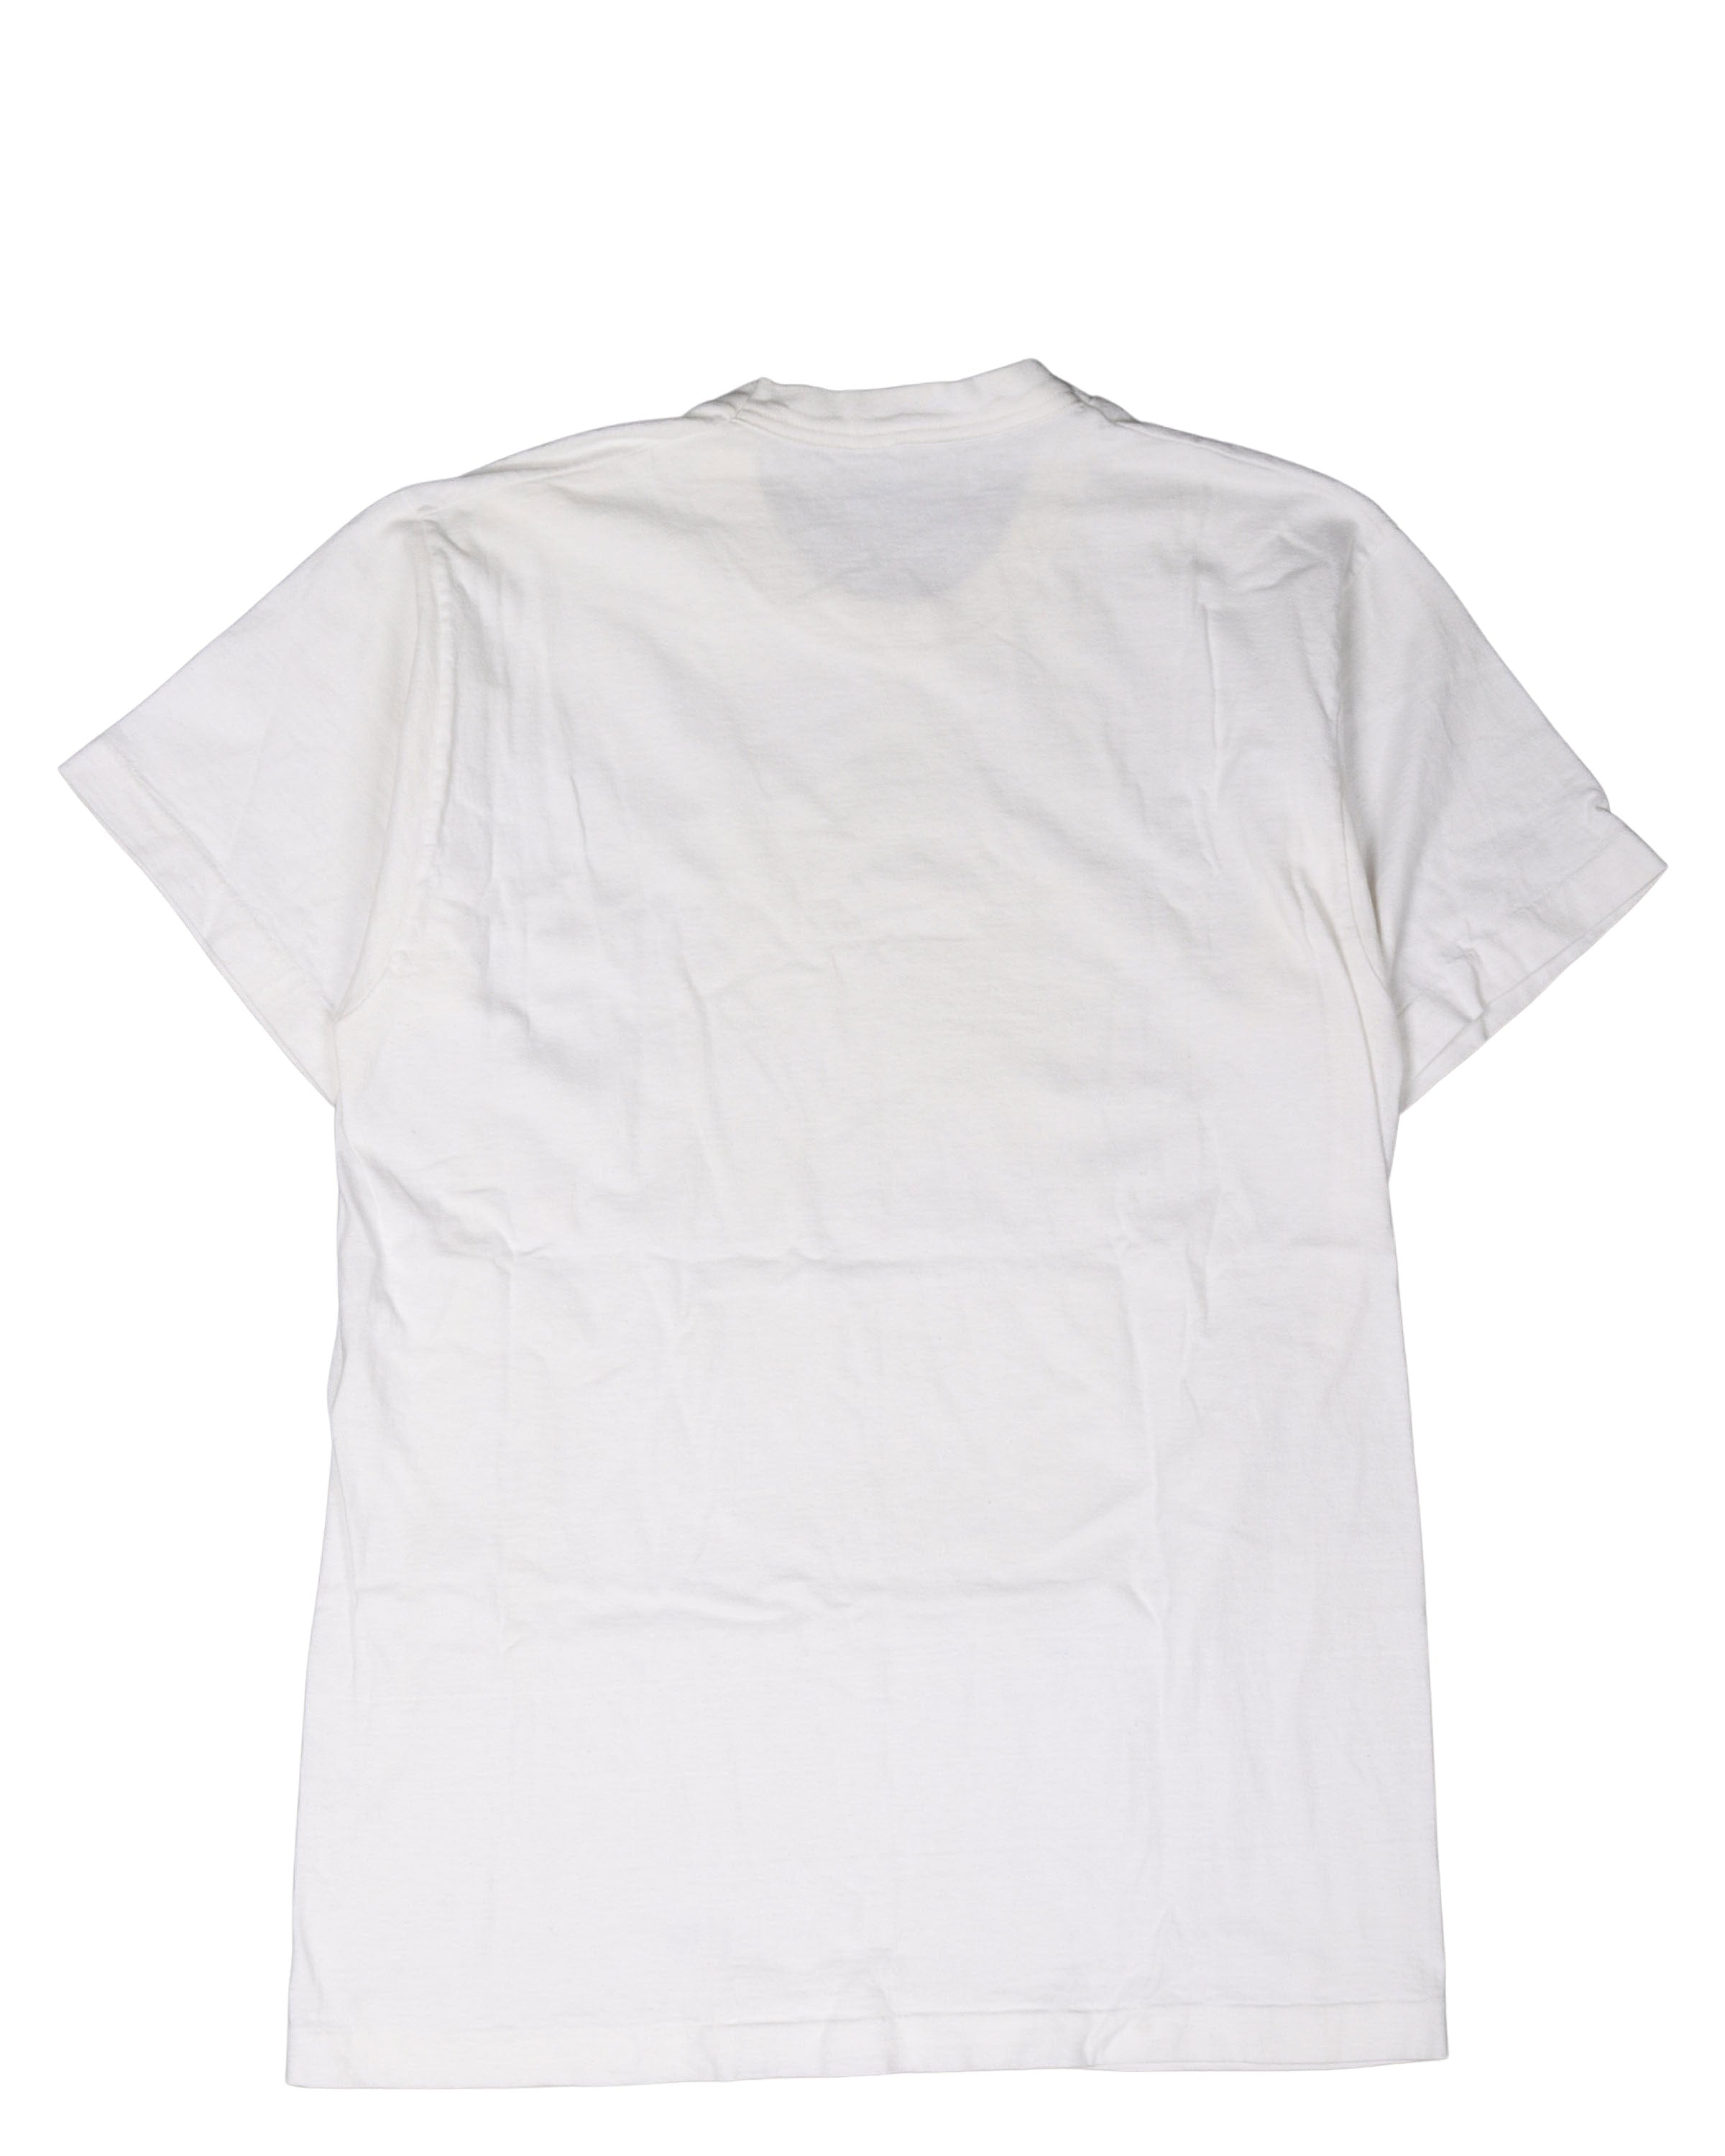 Frank Lloyd Wright T-Shirt